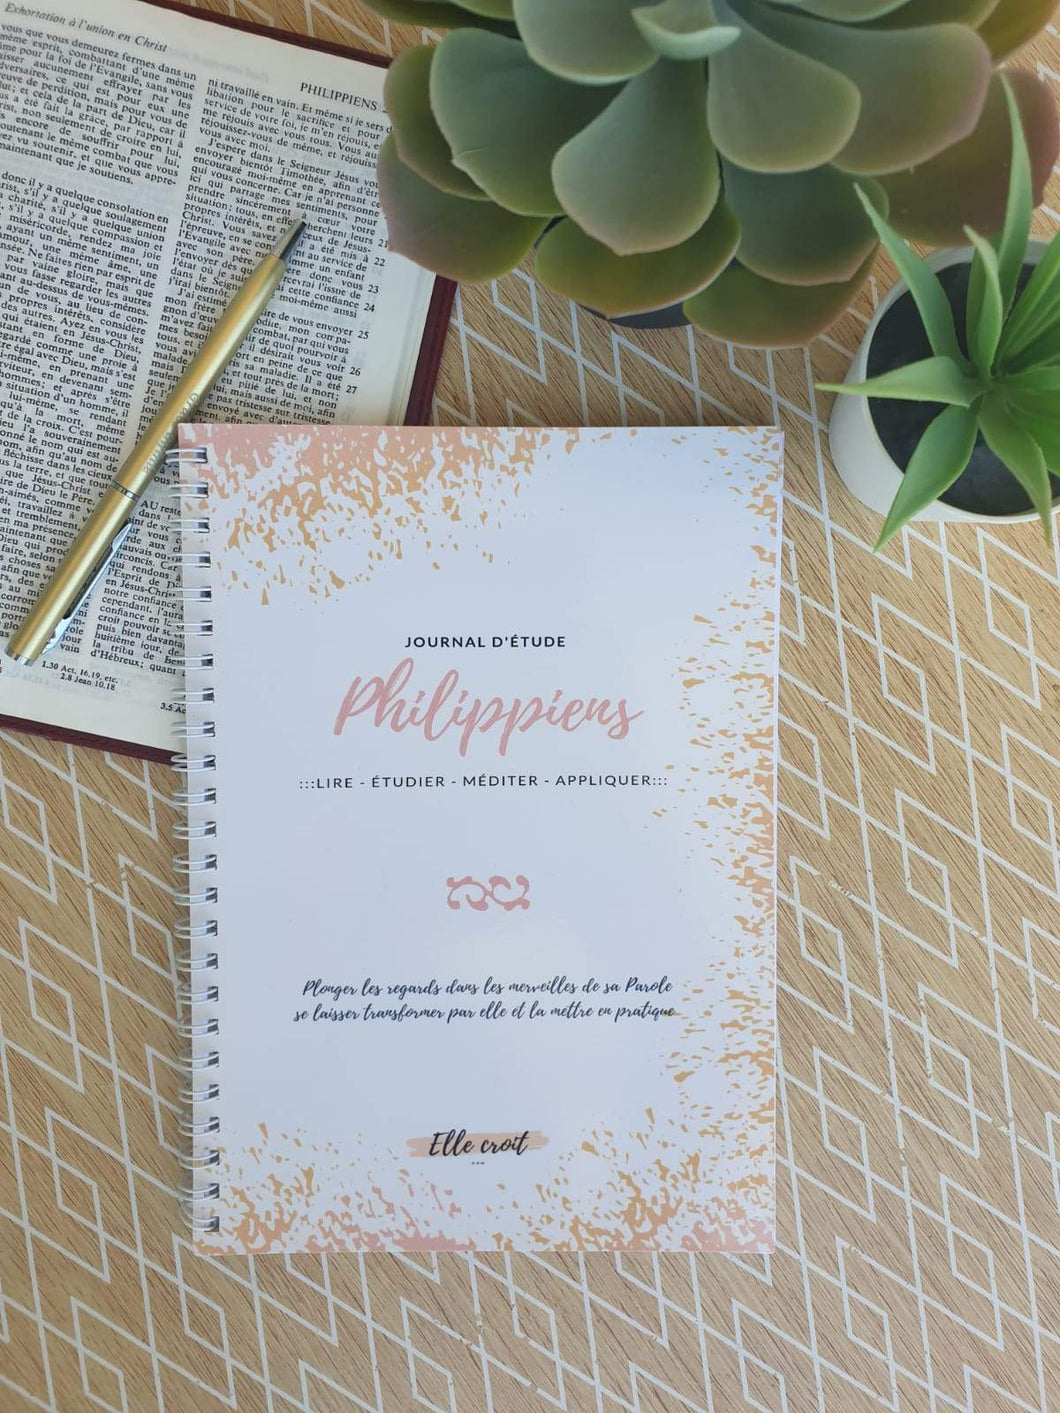 Journal d'étude - Philippiens 2e chance